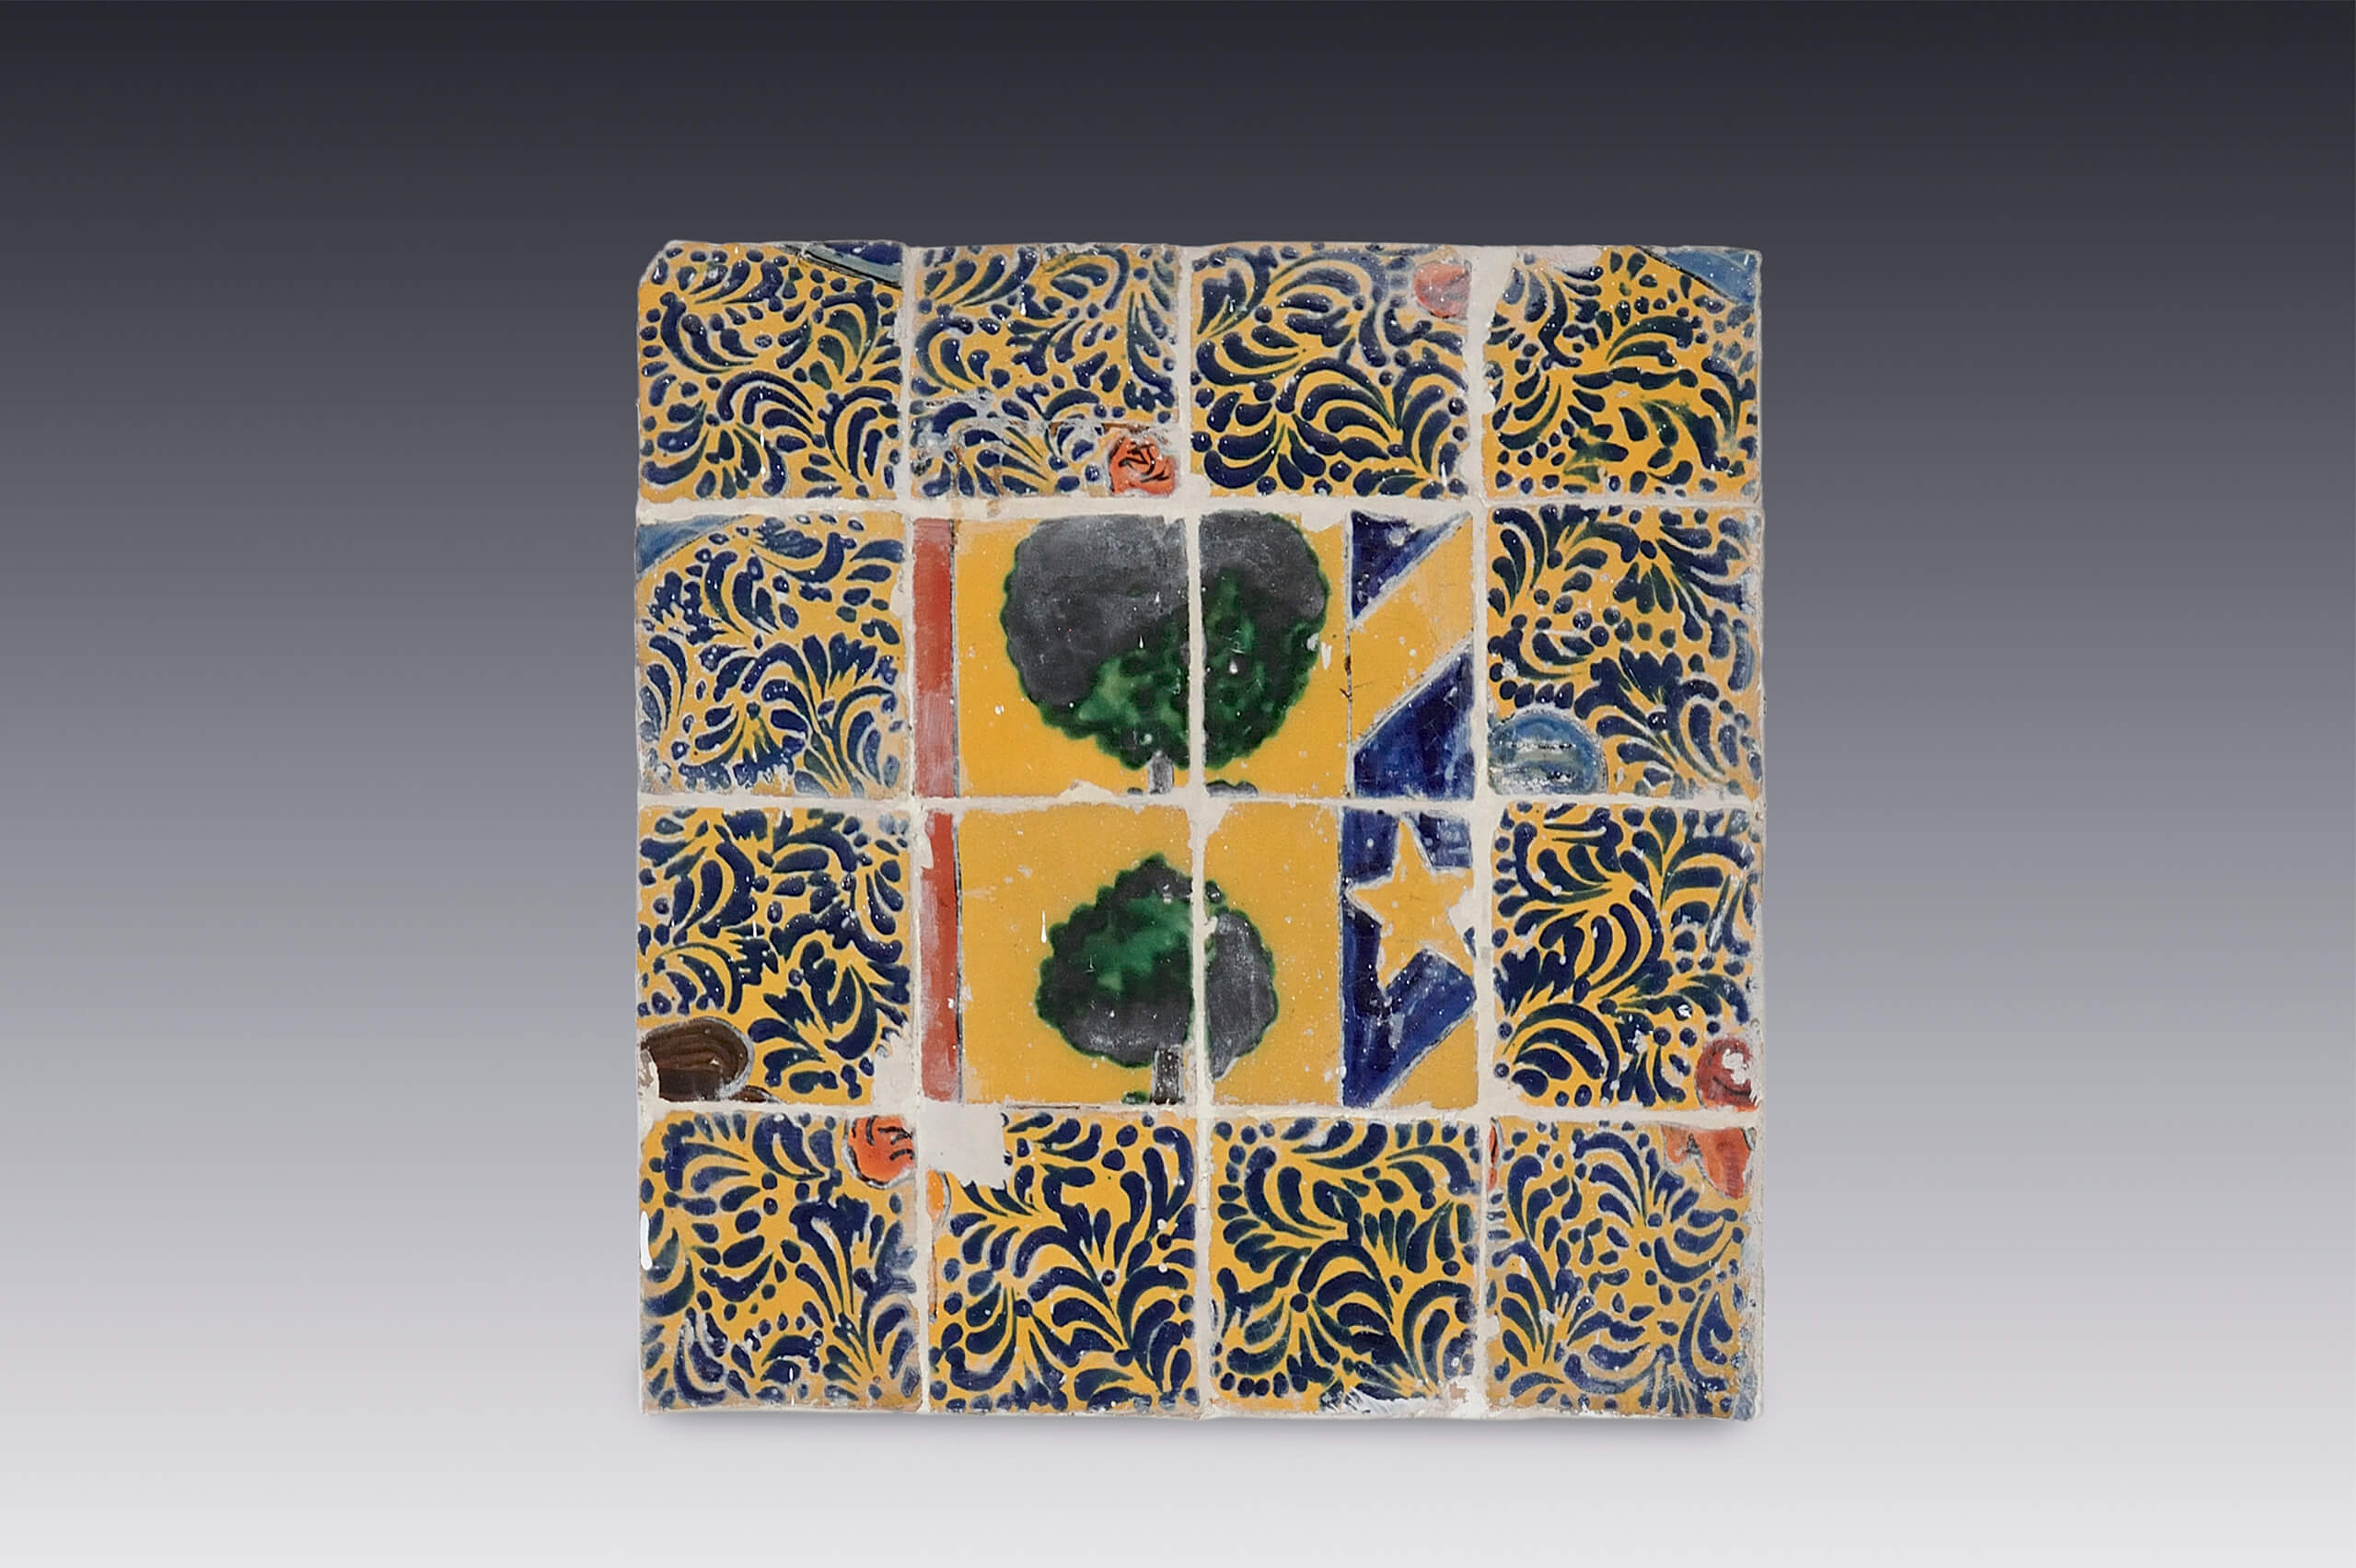 Panel de azulejos con diseño de árboles | Salas de Arte Virreinal y Siglo XIX | Museo Amparo, Puebla